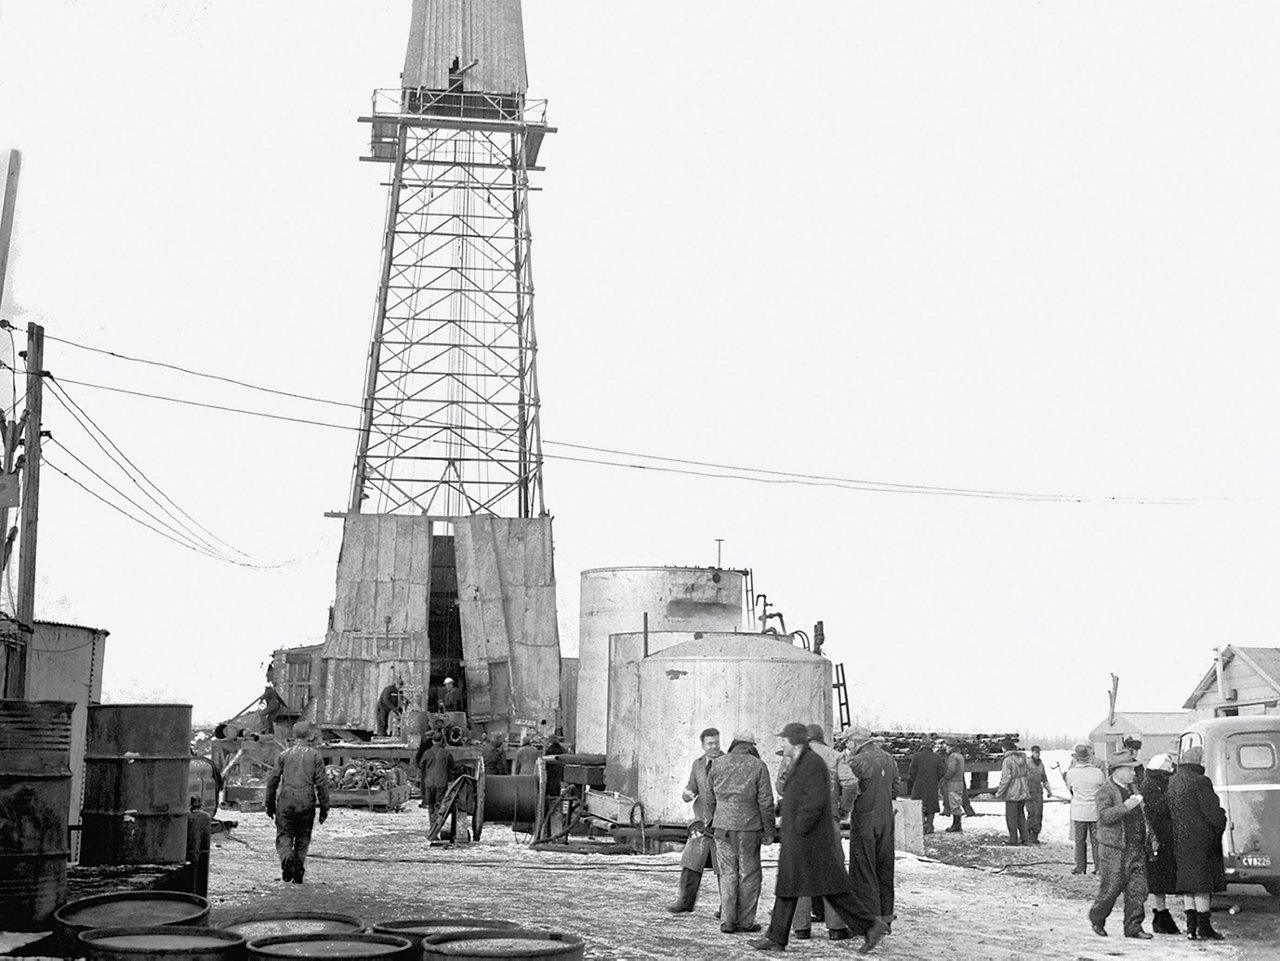 Men working around oil tower